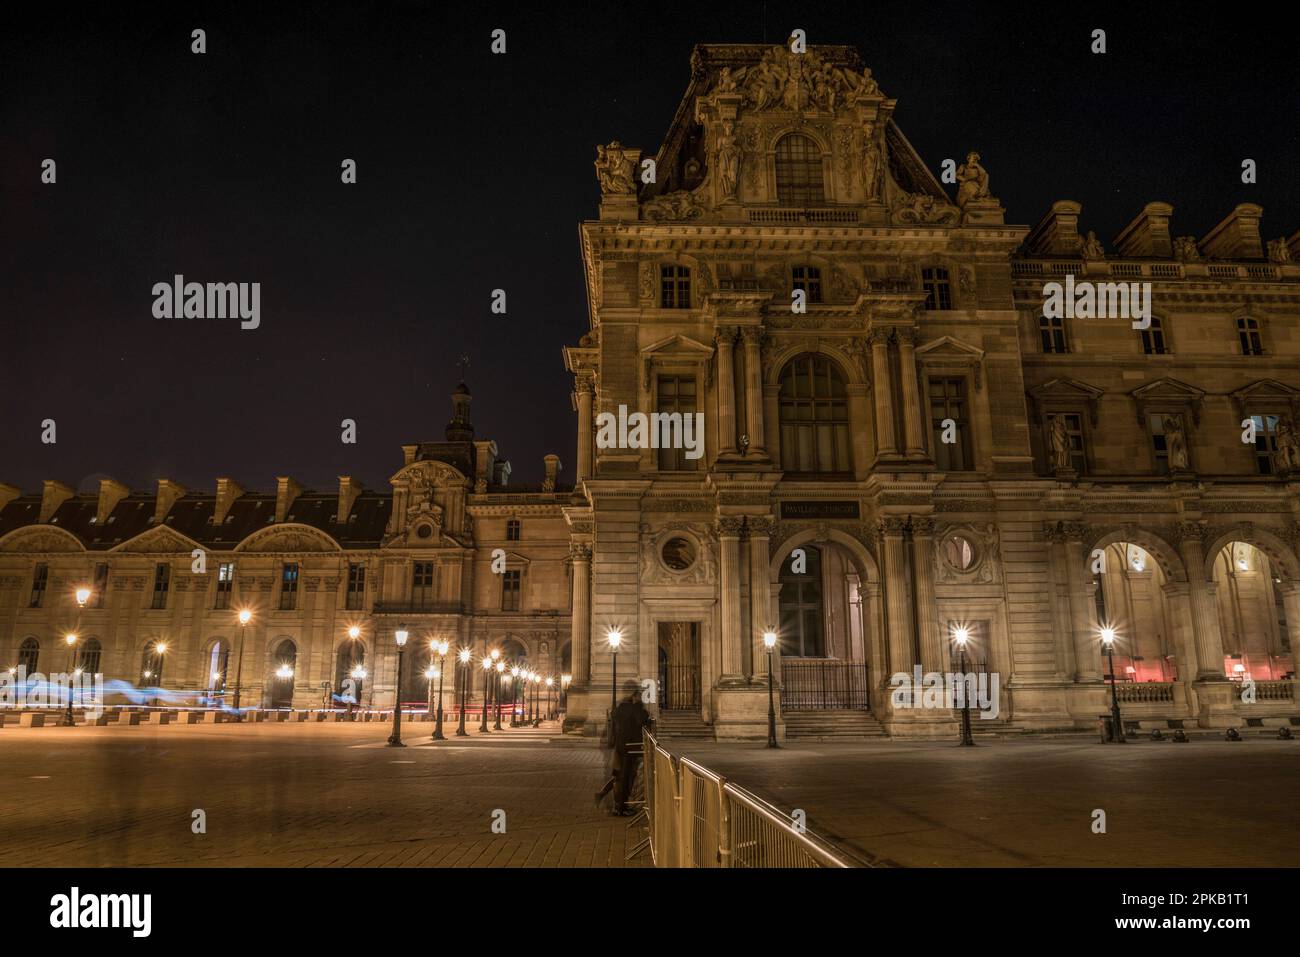 Le célèbre Palais du Louvre de Paris la nuit, France Banque D'Images